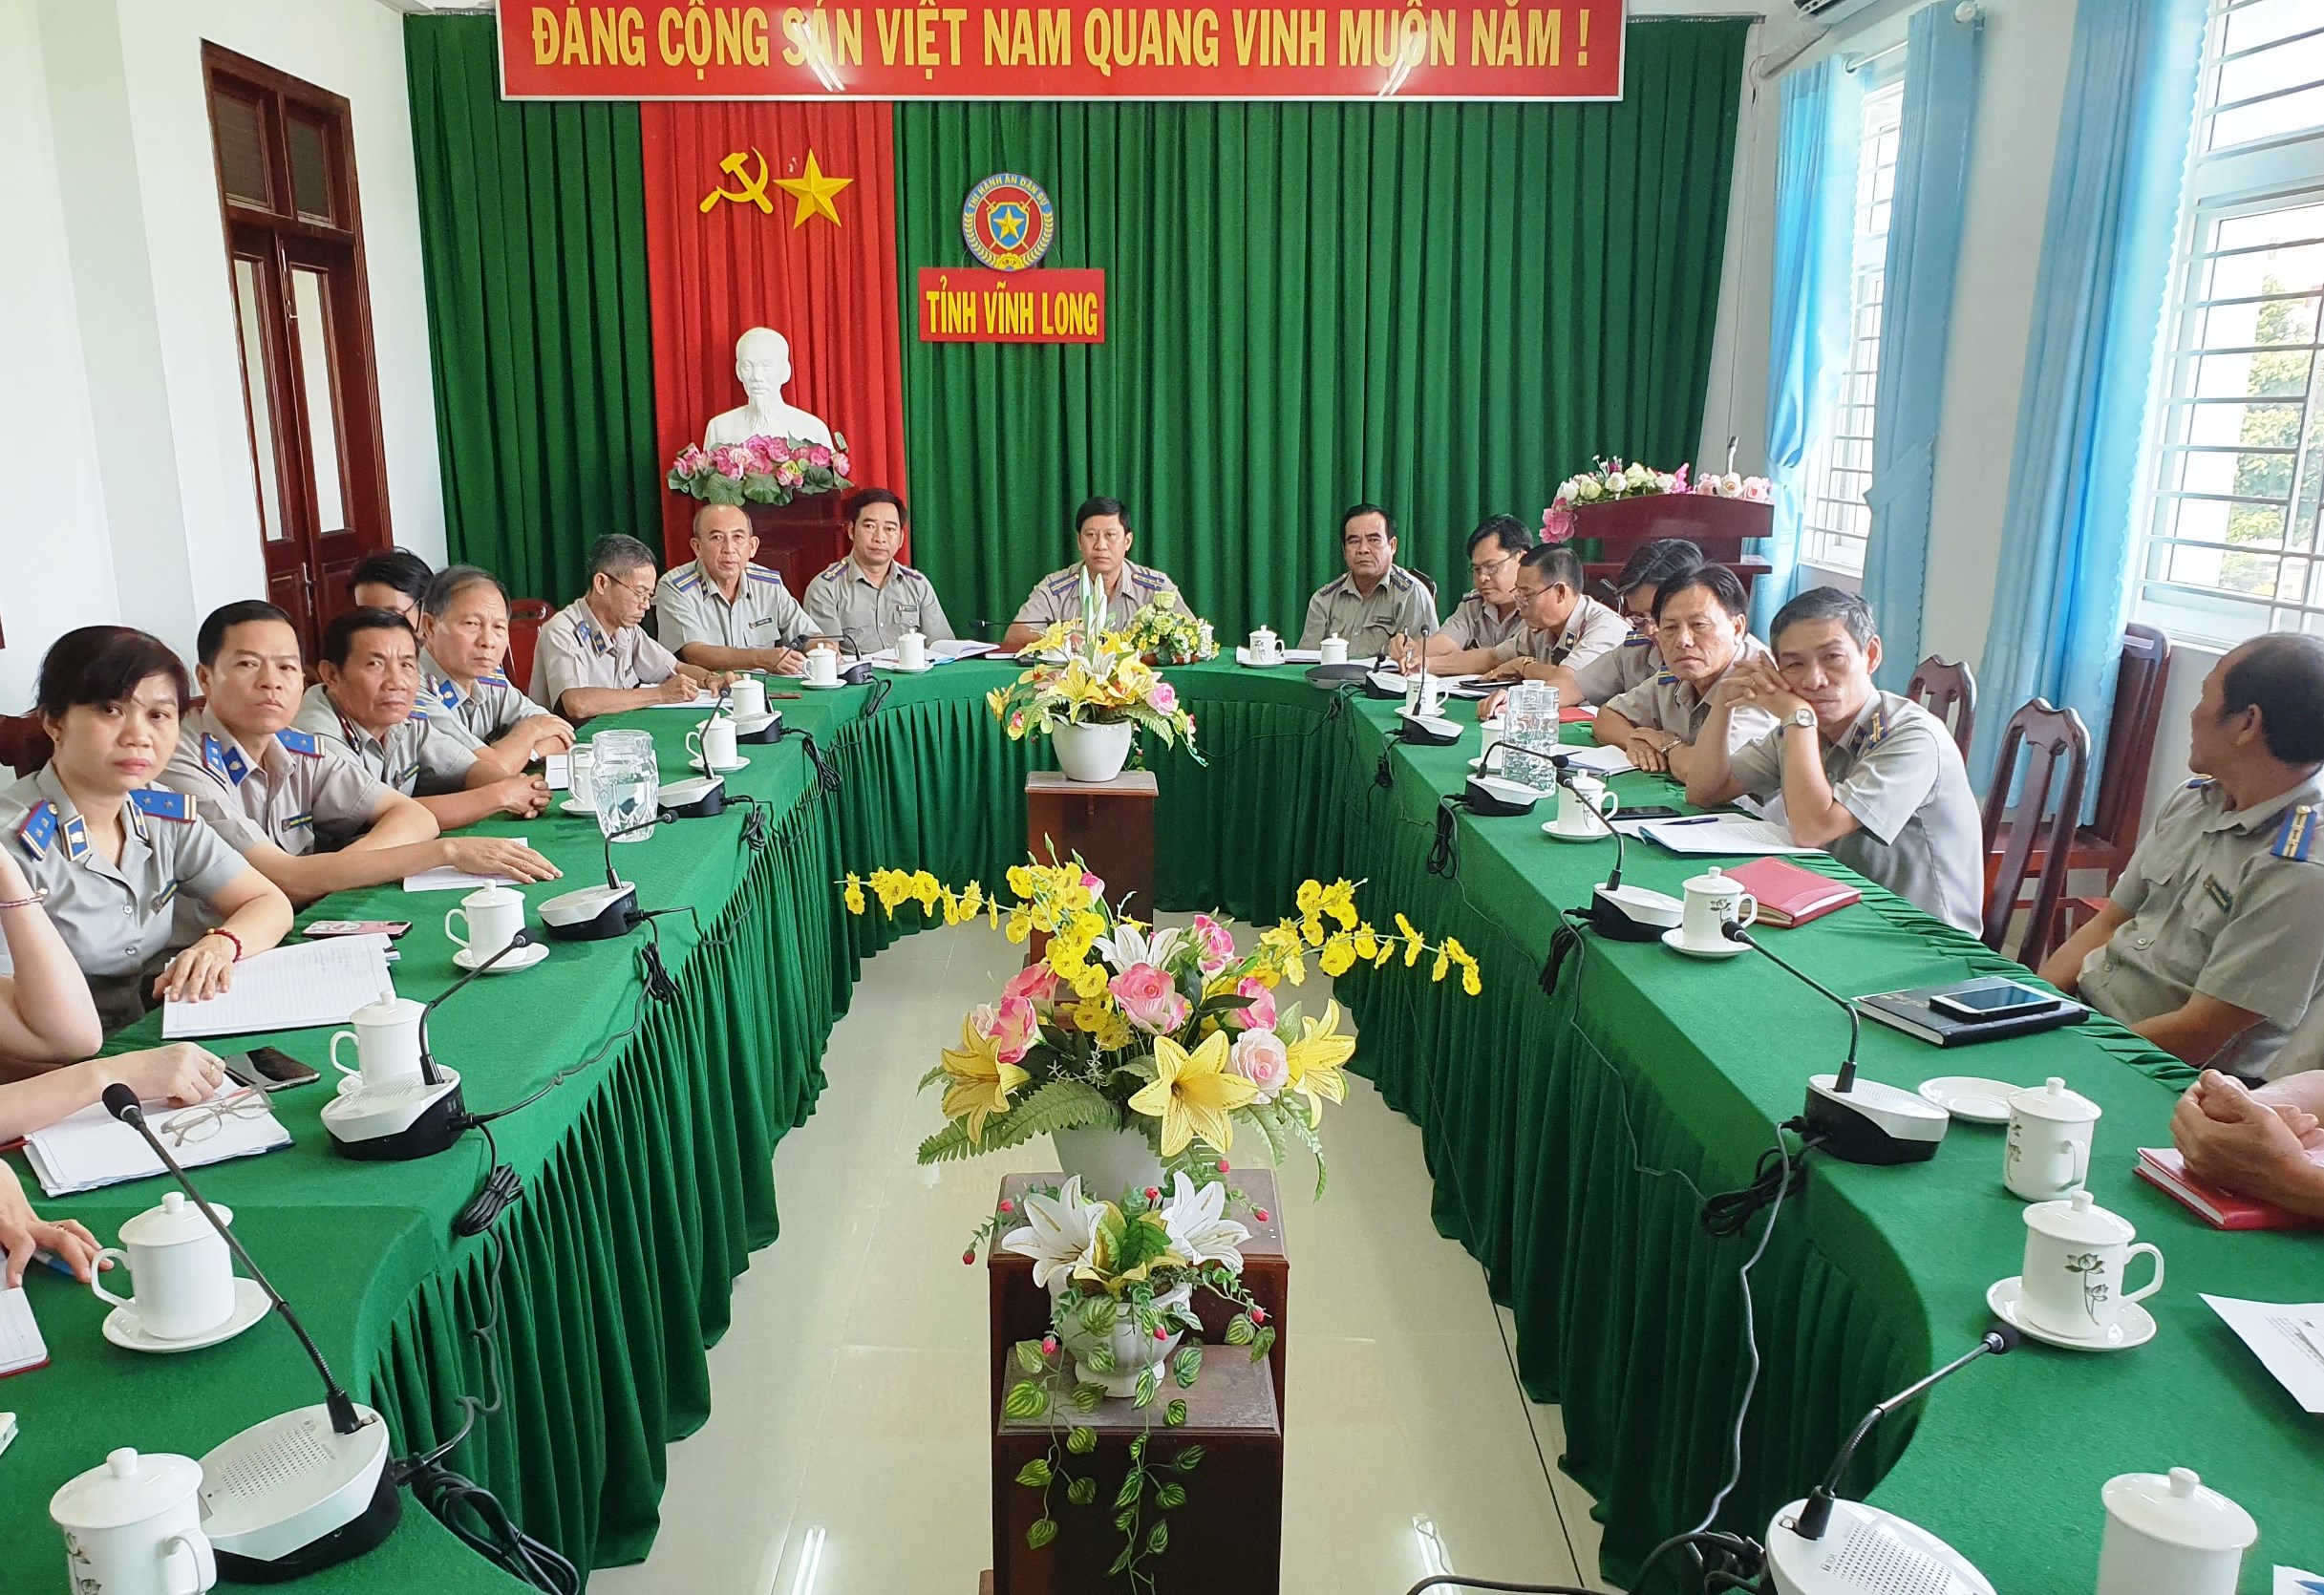 Đảng ủy Khối các cơ quan Trung ương quán triệt nội dung cuốn sách của Tổng Bí thư Nguyễn Phú Trọng về phòng, chống tham nhũng, tiêu cực